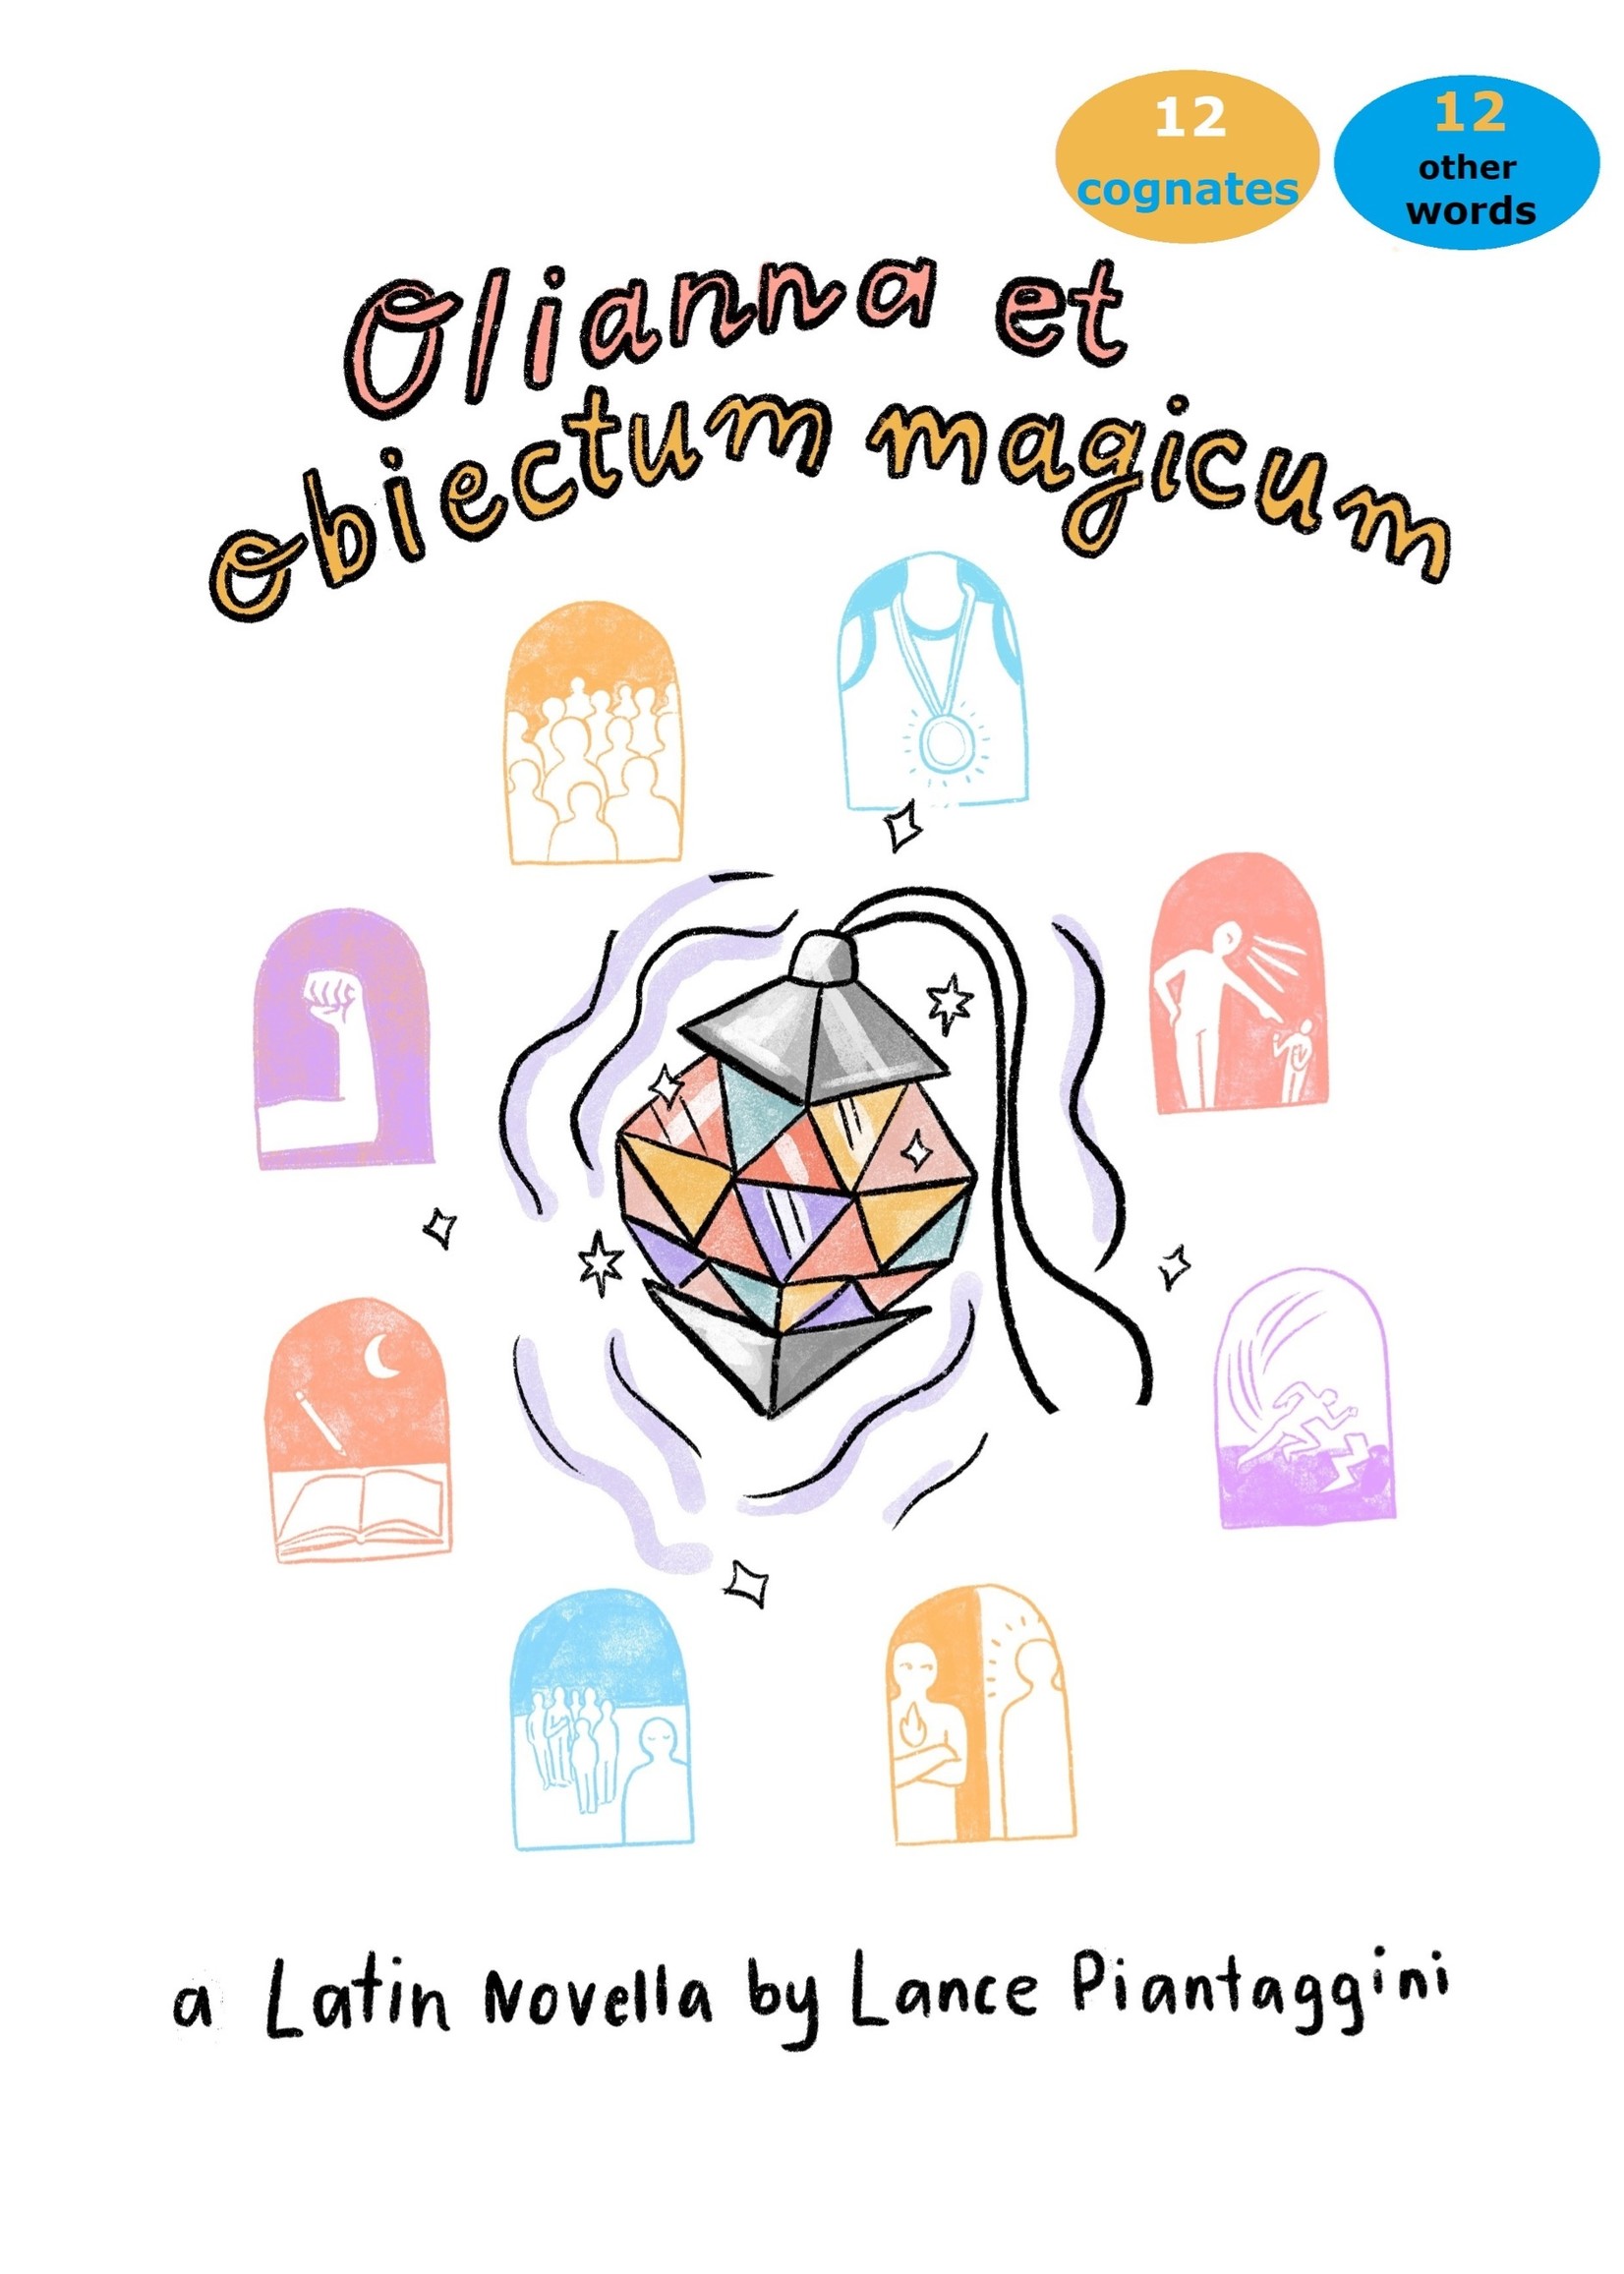 Olianna et obiectum magicum